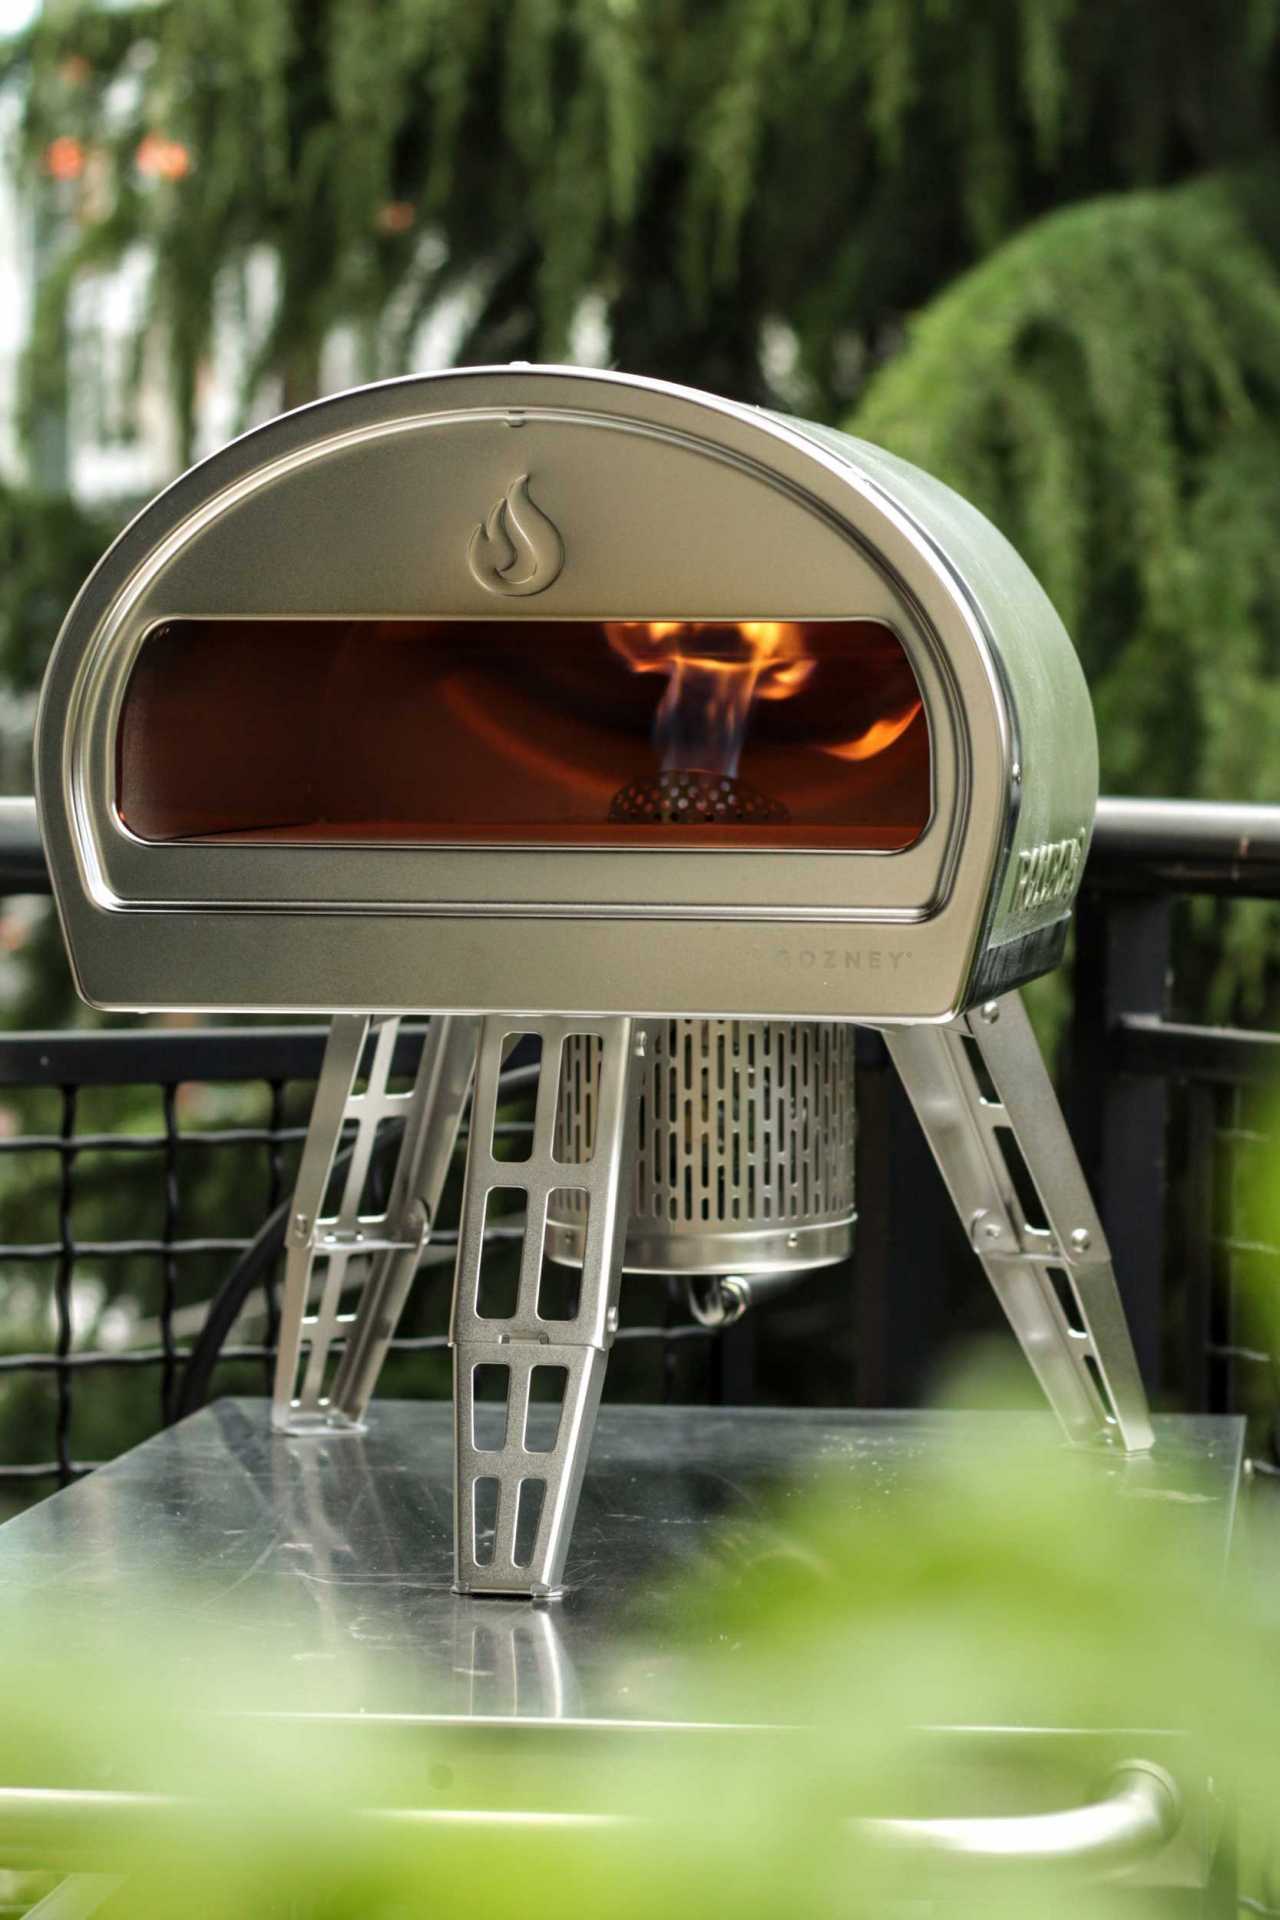 Win a Gozney Roccbox pizza oven